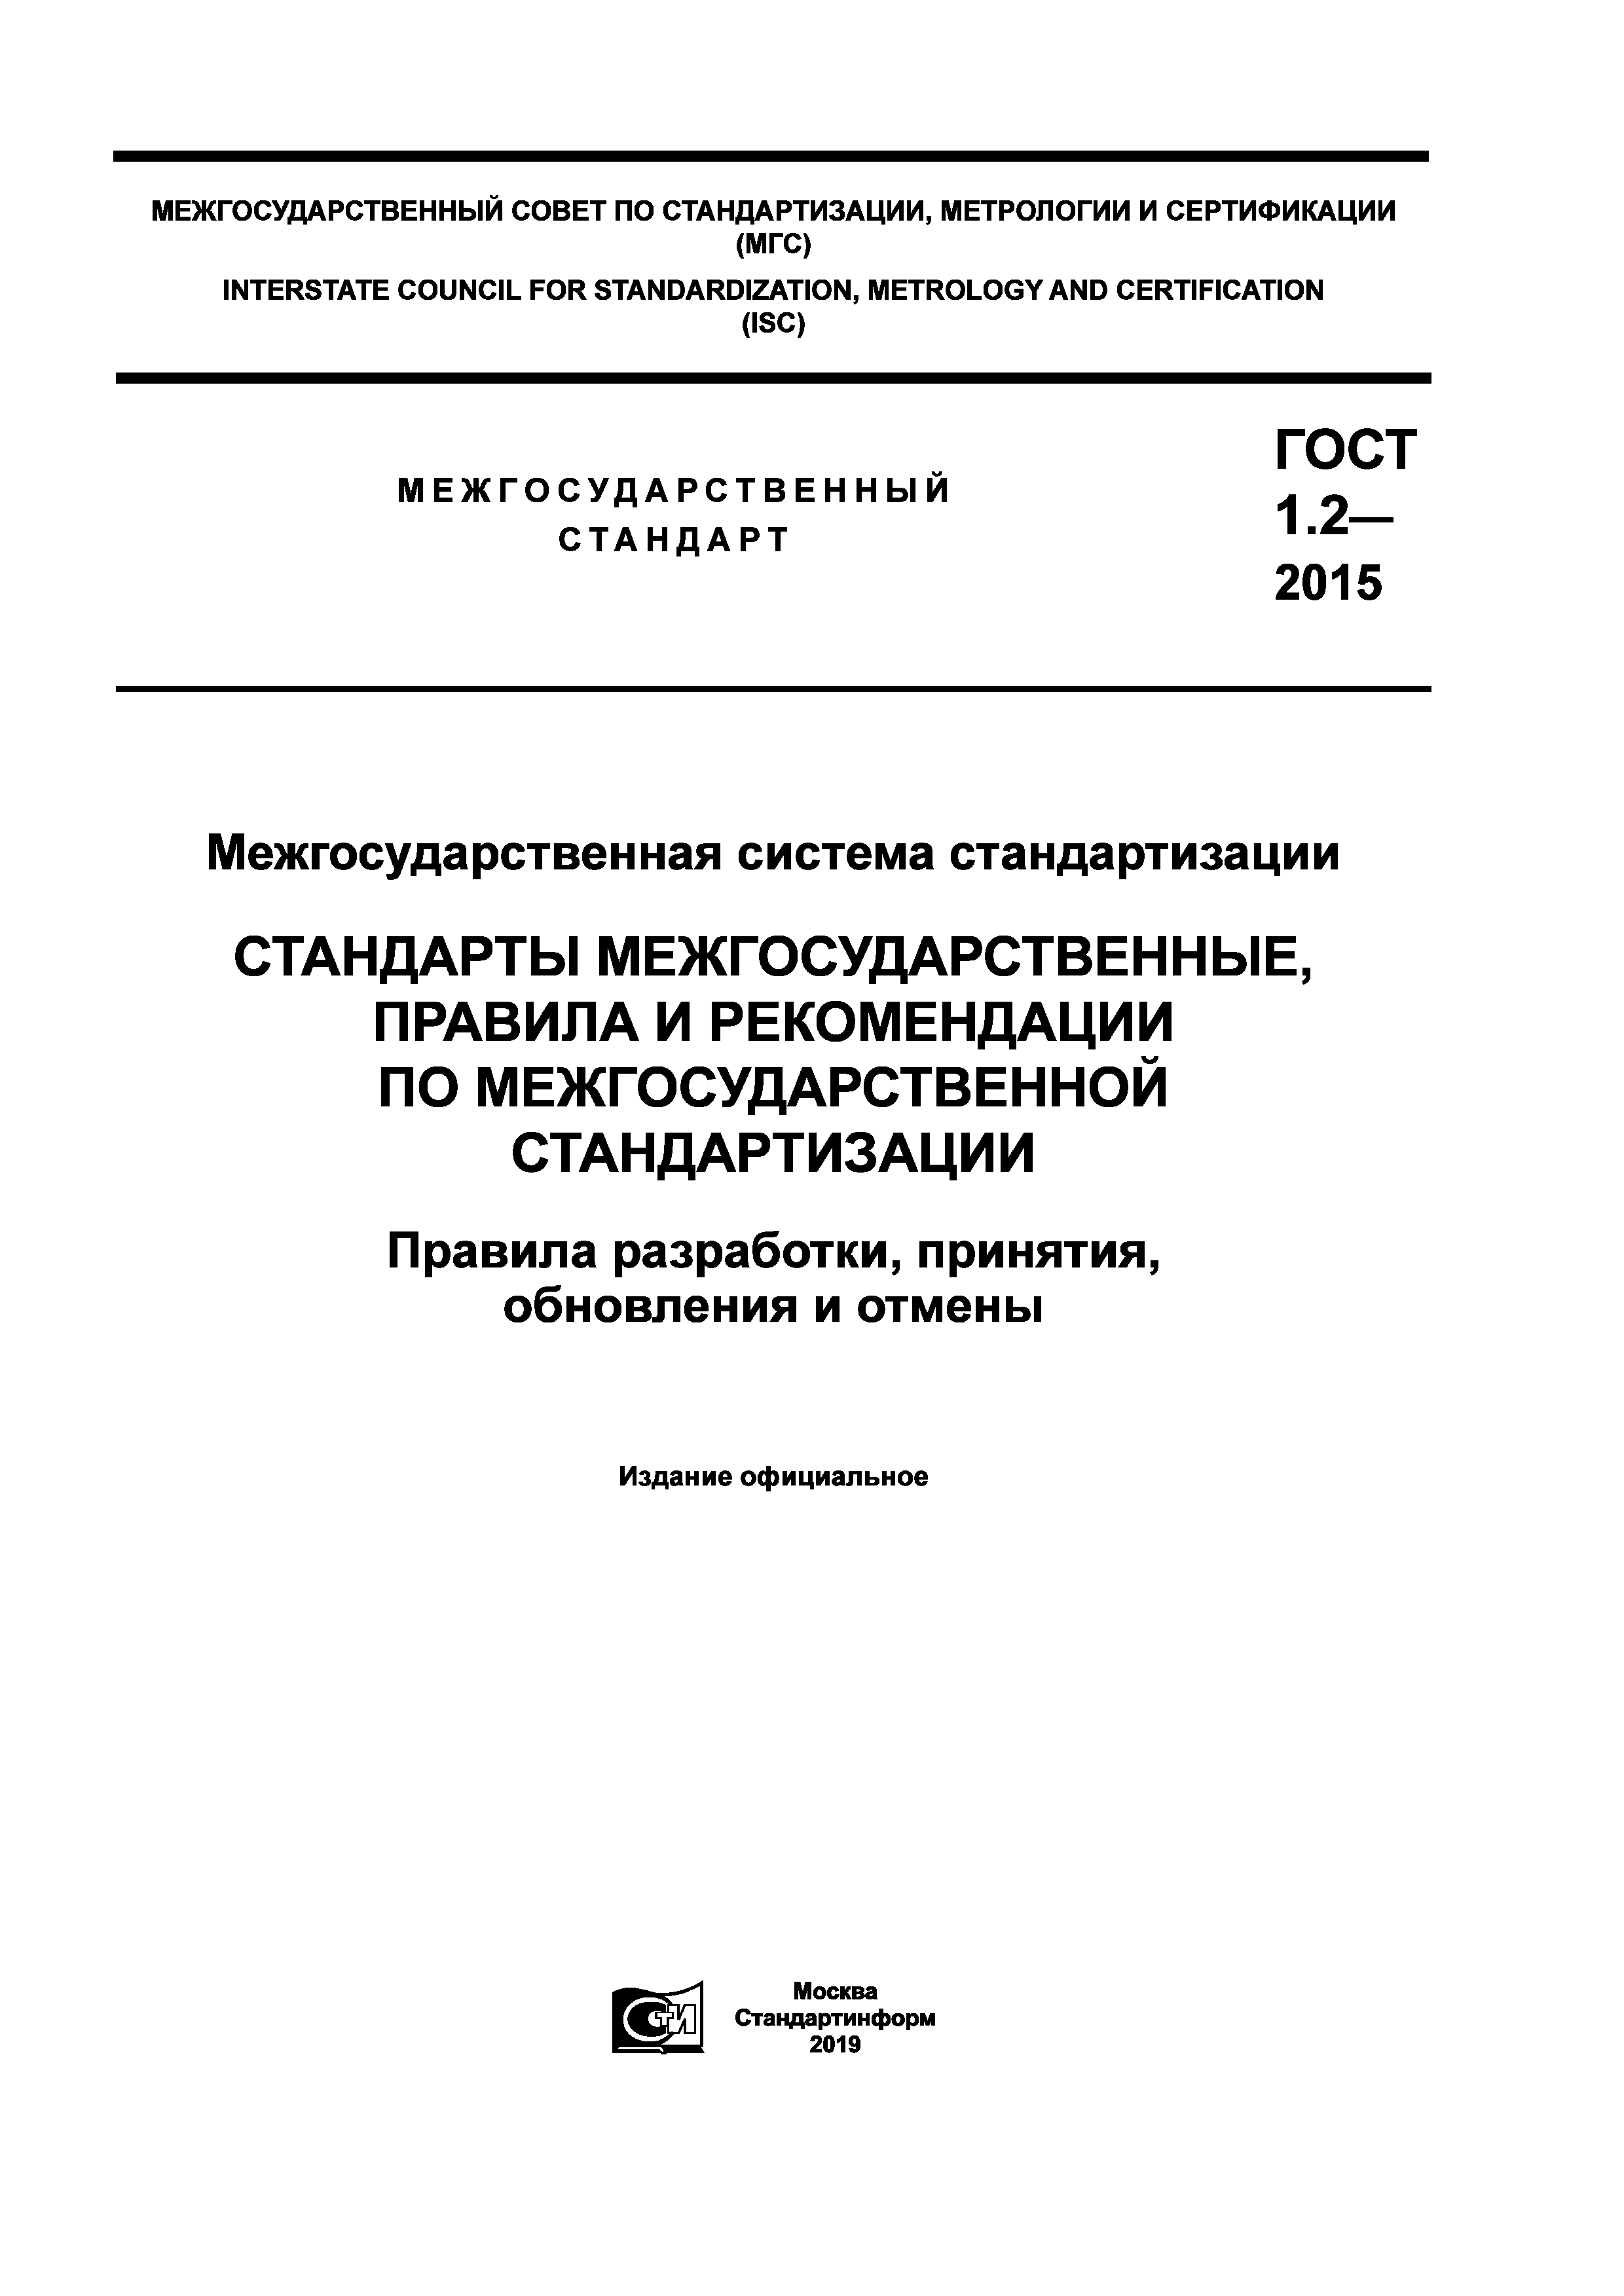 Скачать ГОСТ 1.2-2015 Межгосударственная Система Стандартизации.